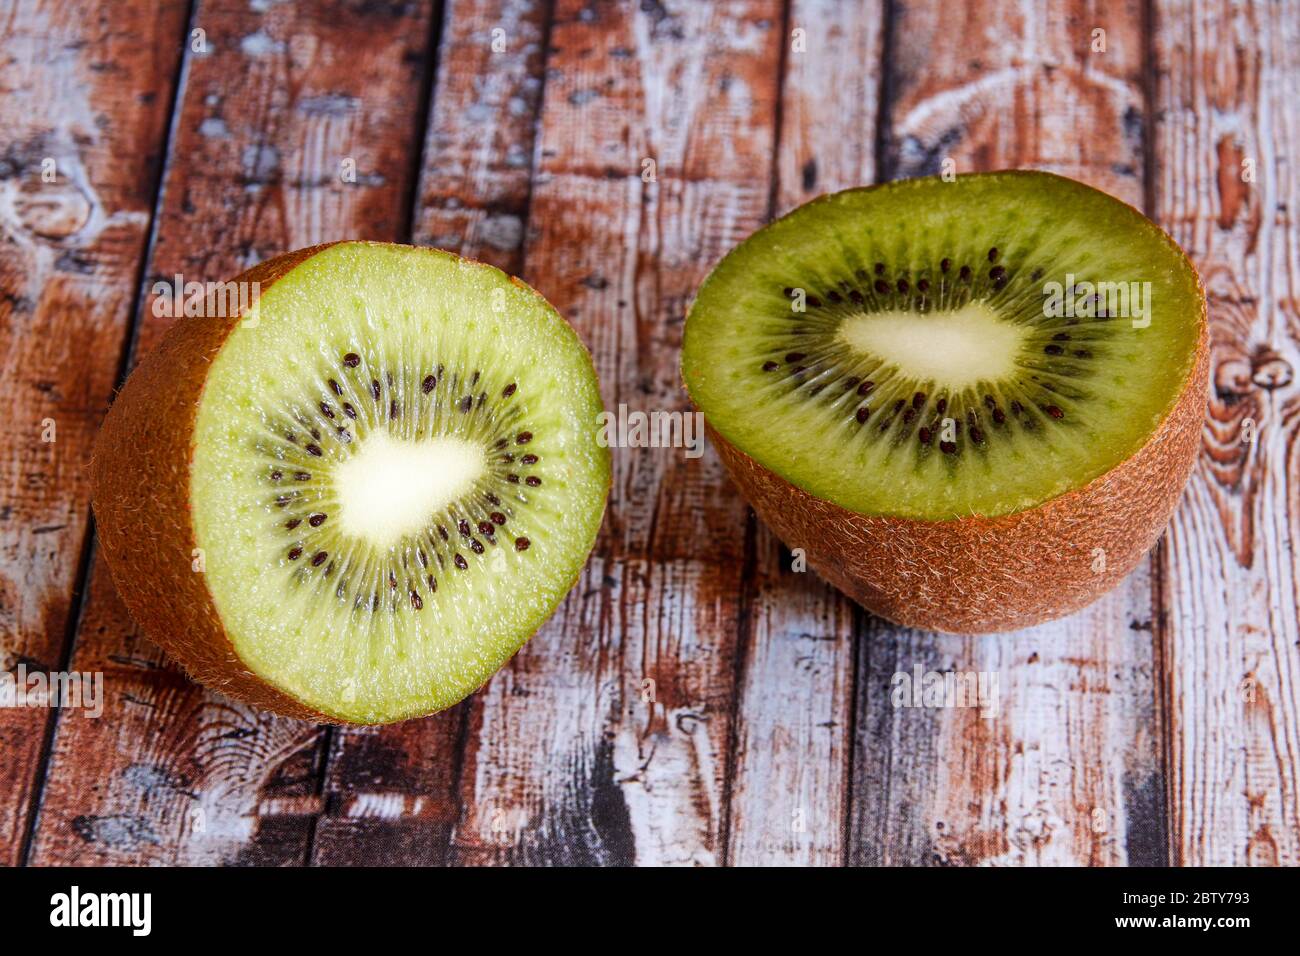 Two halves of kiwi on wood background Stock Photo